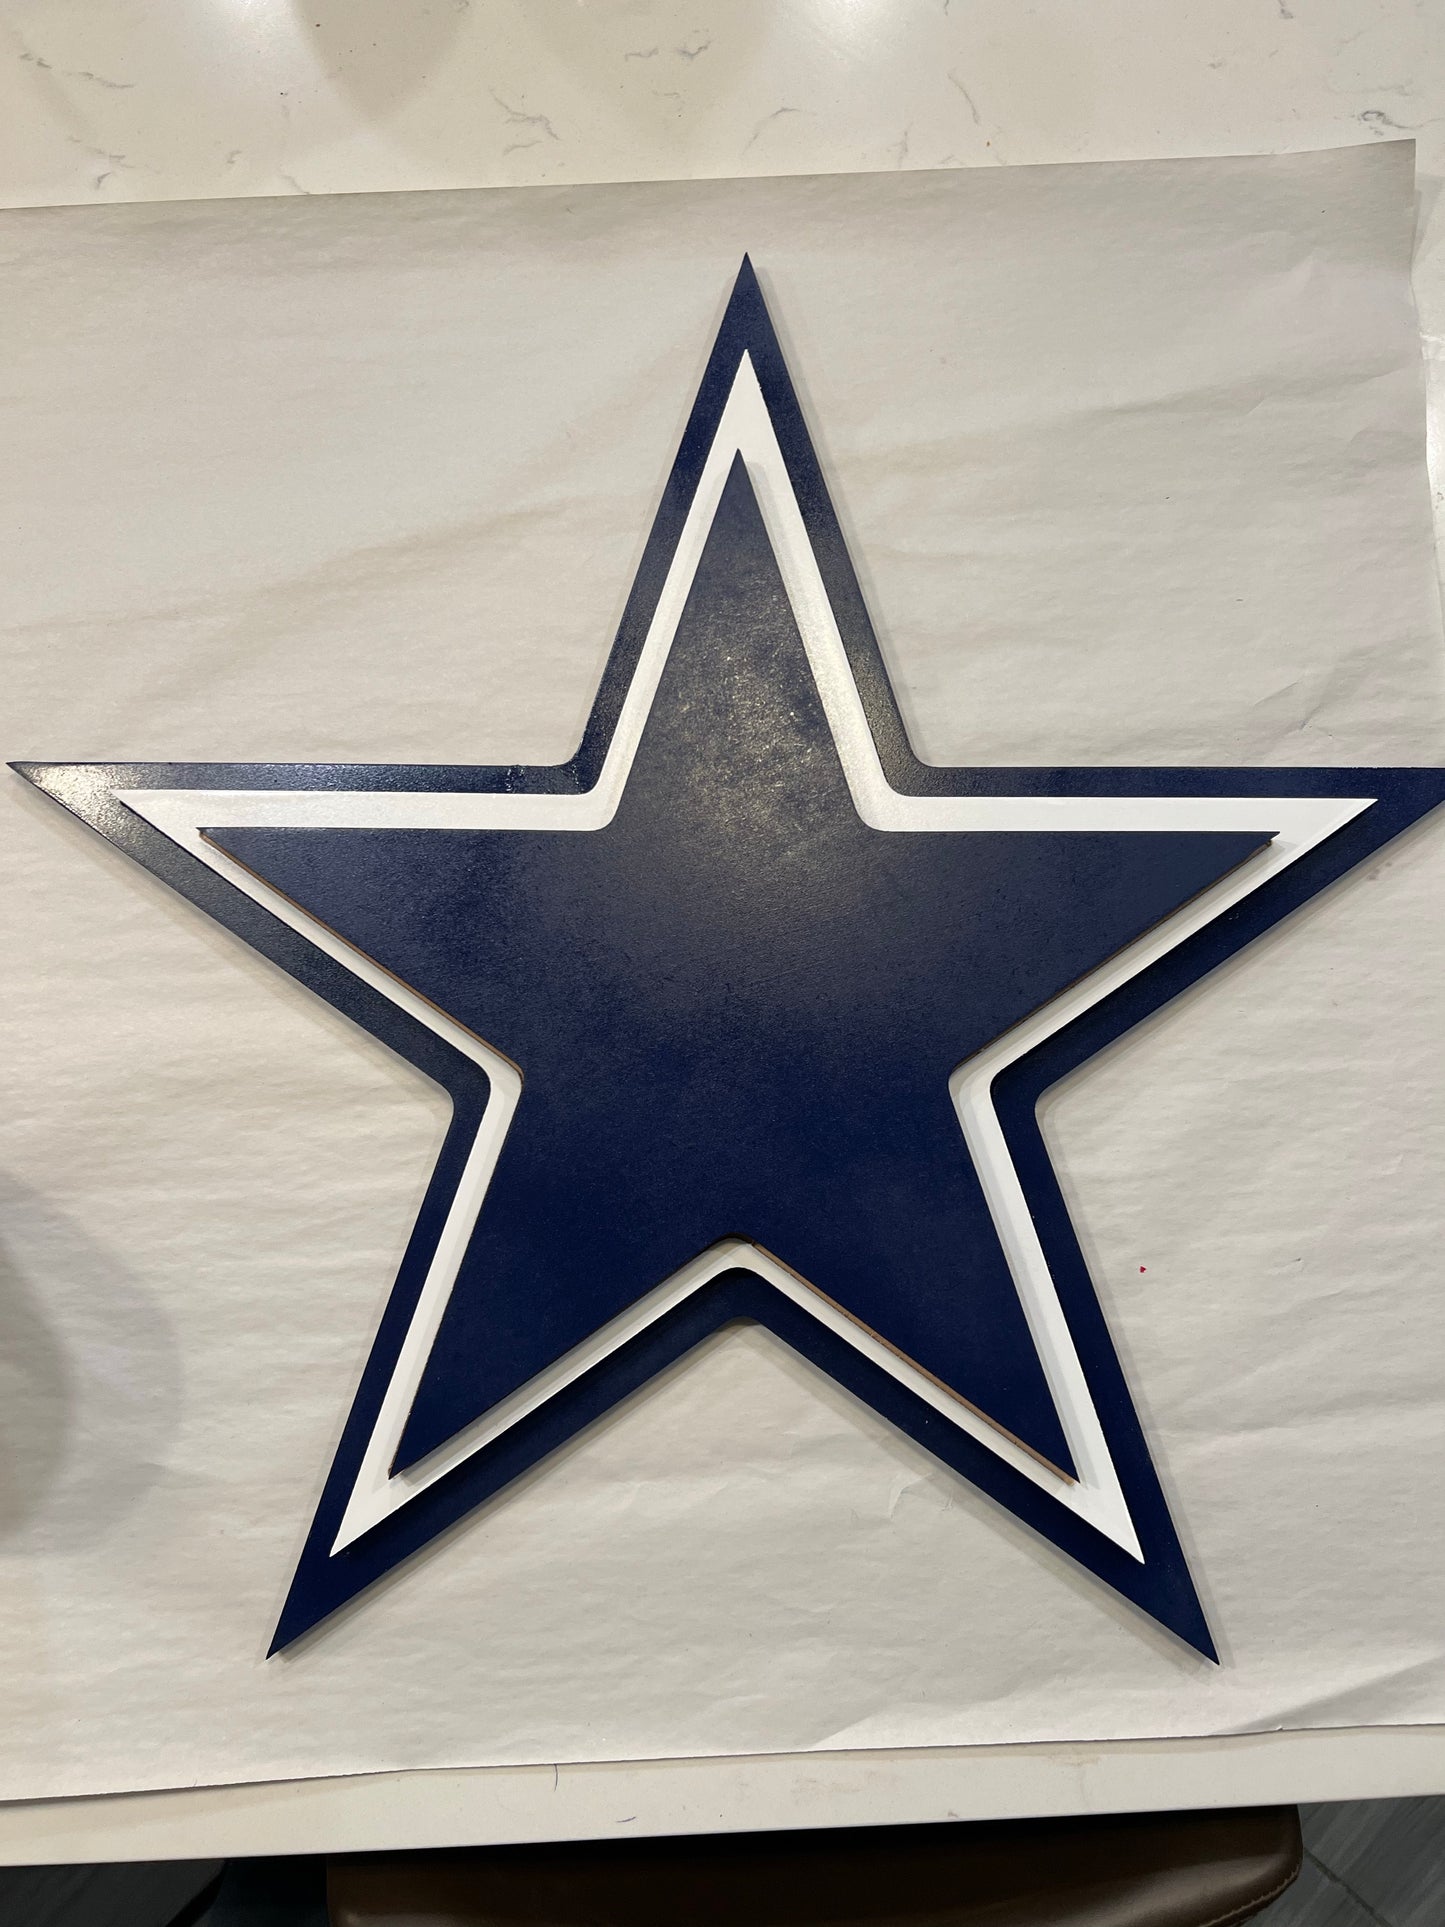 Dallas Cowboy logo